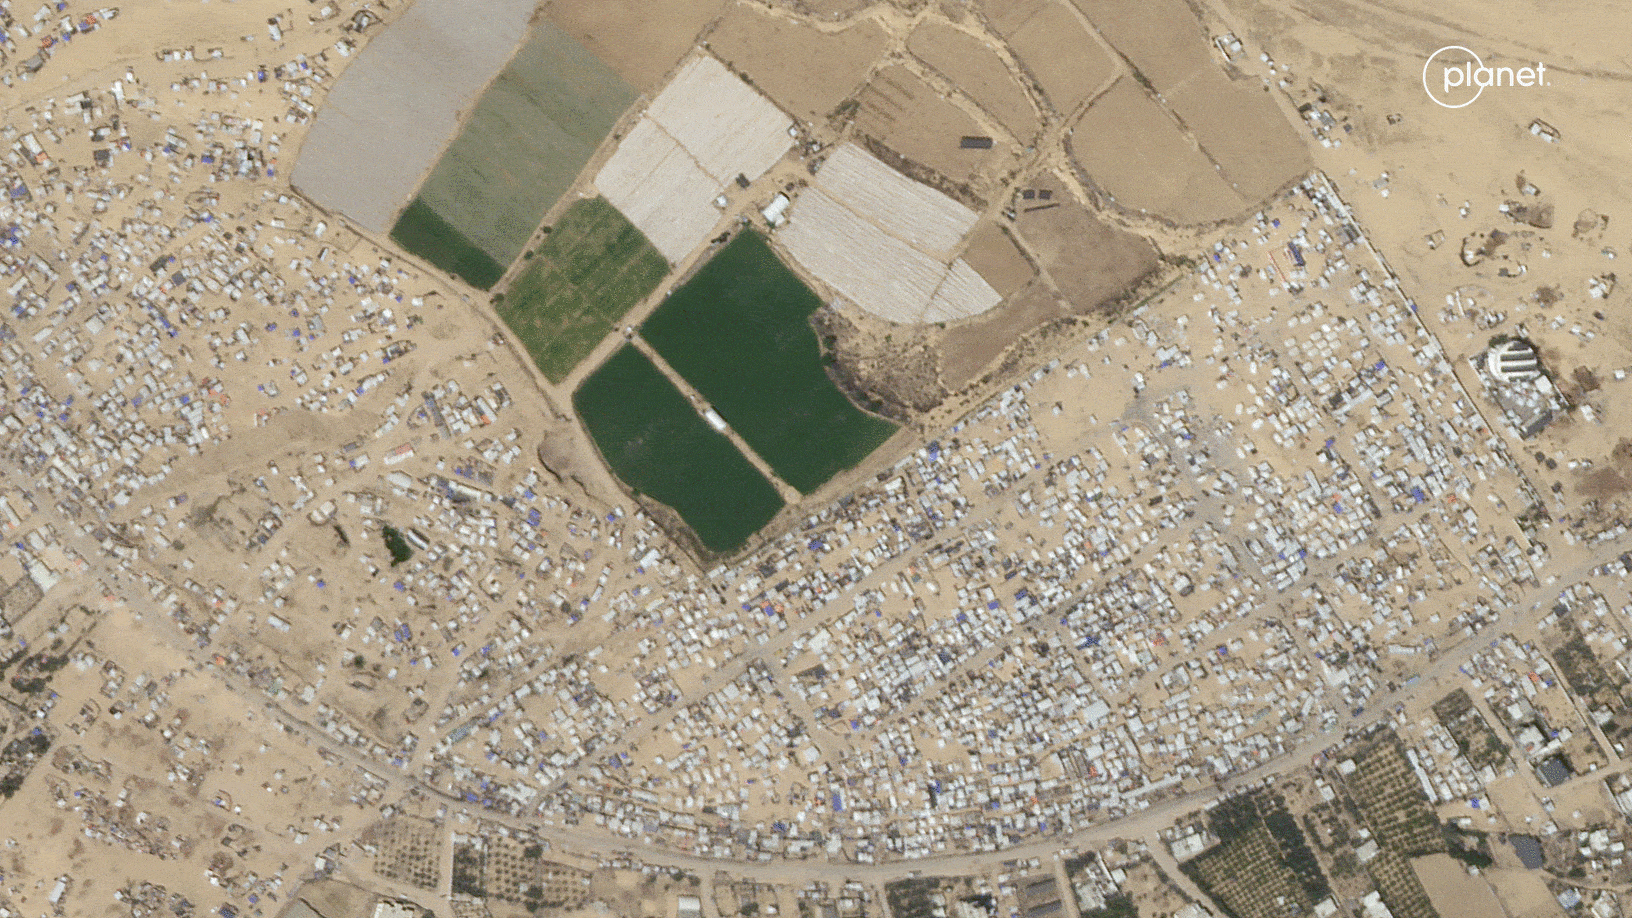  Спутниковые снимки города Рафах в секторе Газа, сделанные 5 мая и 8 мая / © Planet Labs PBC